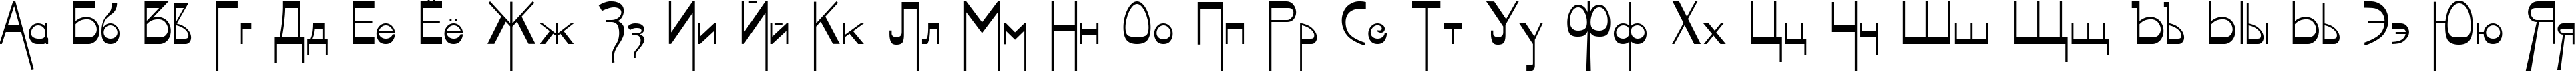 Пример написания русского алфавита шрифтом Geisha